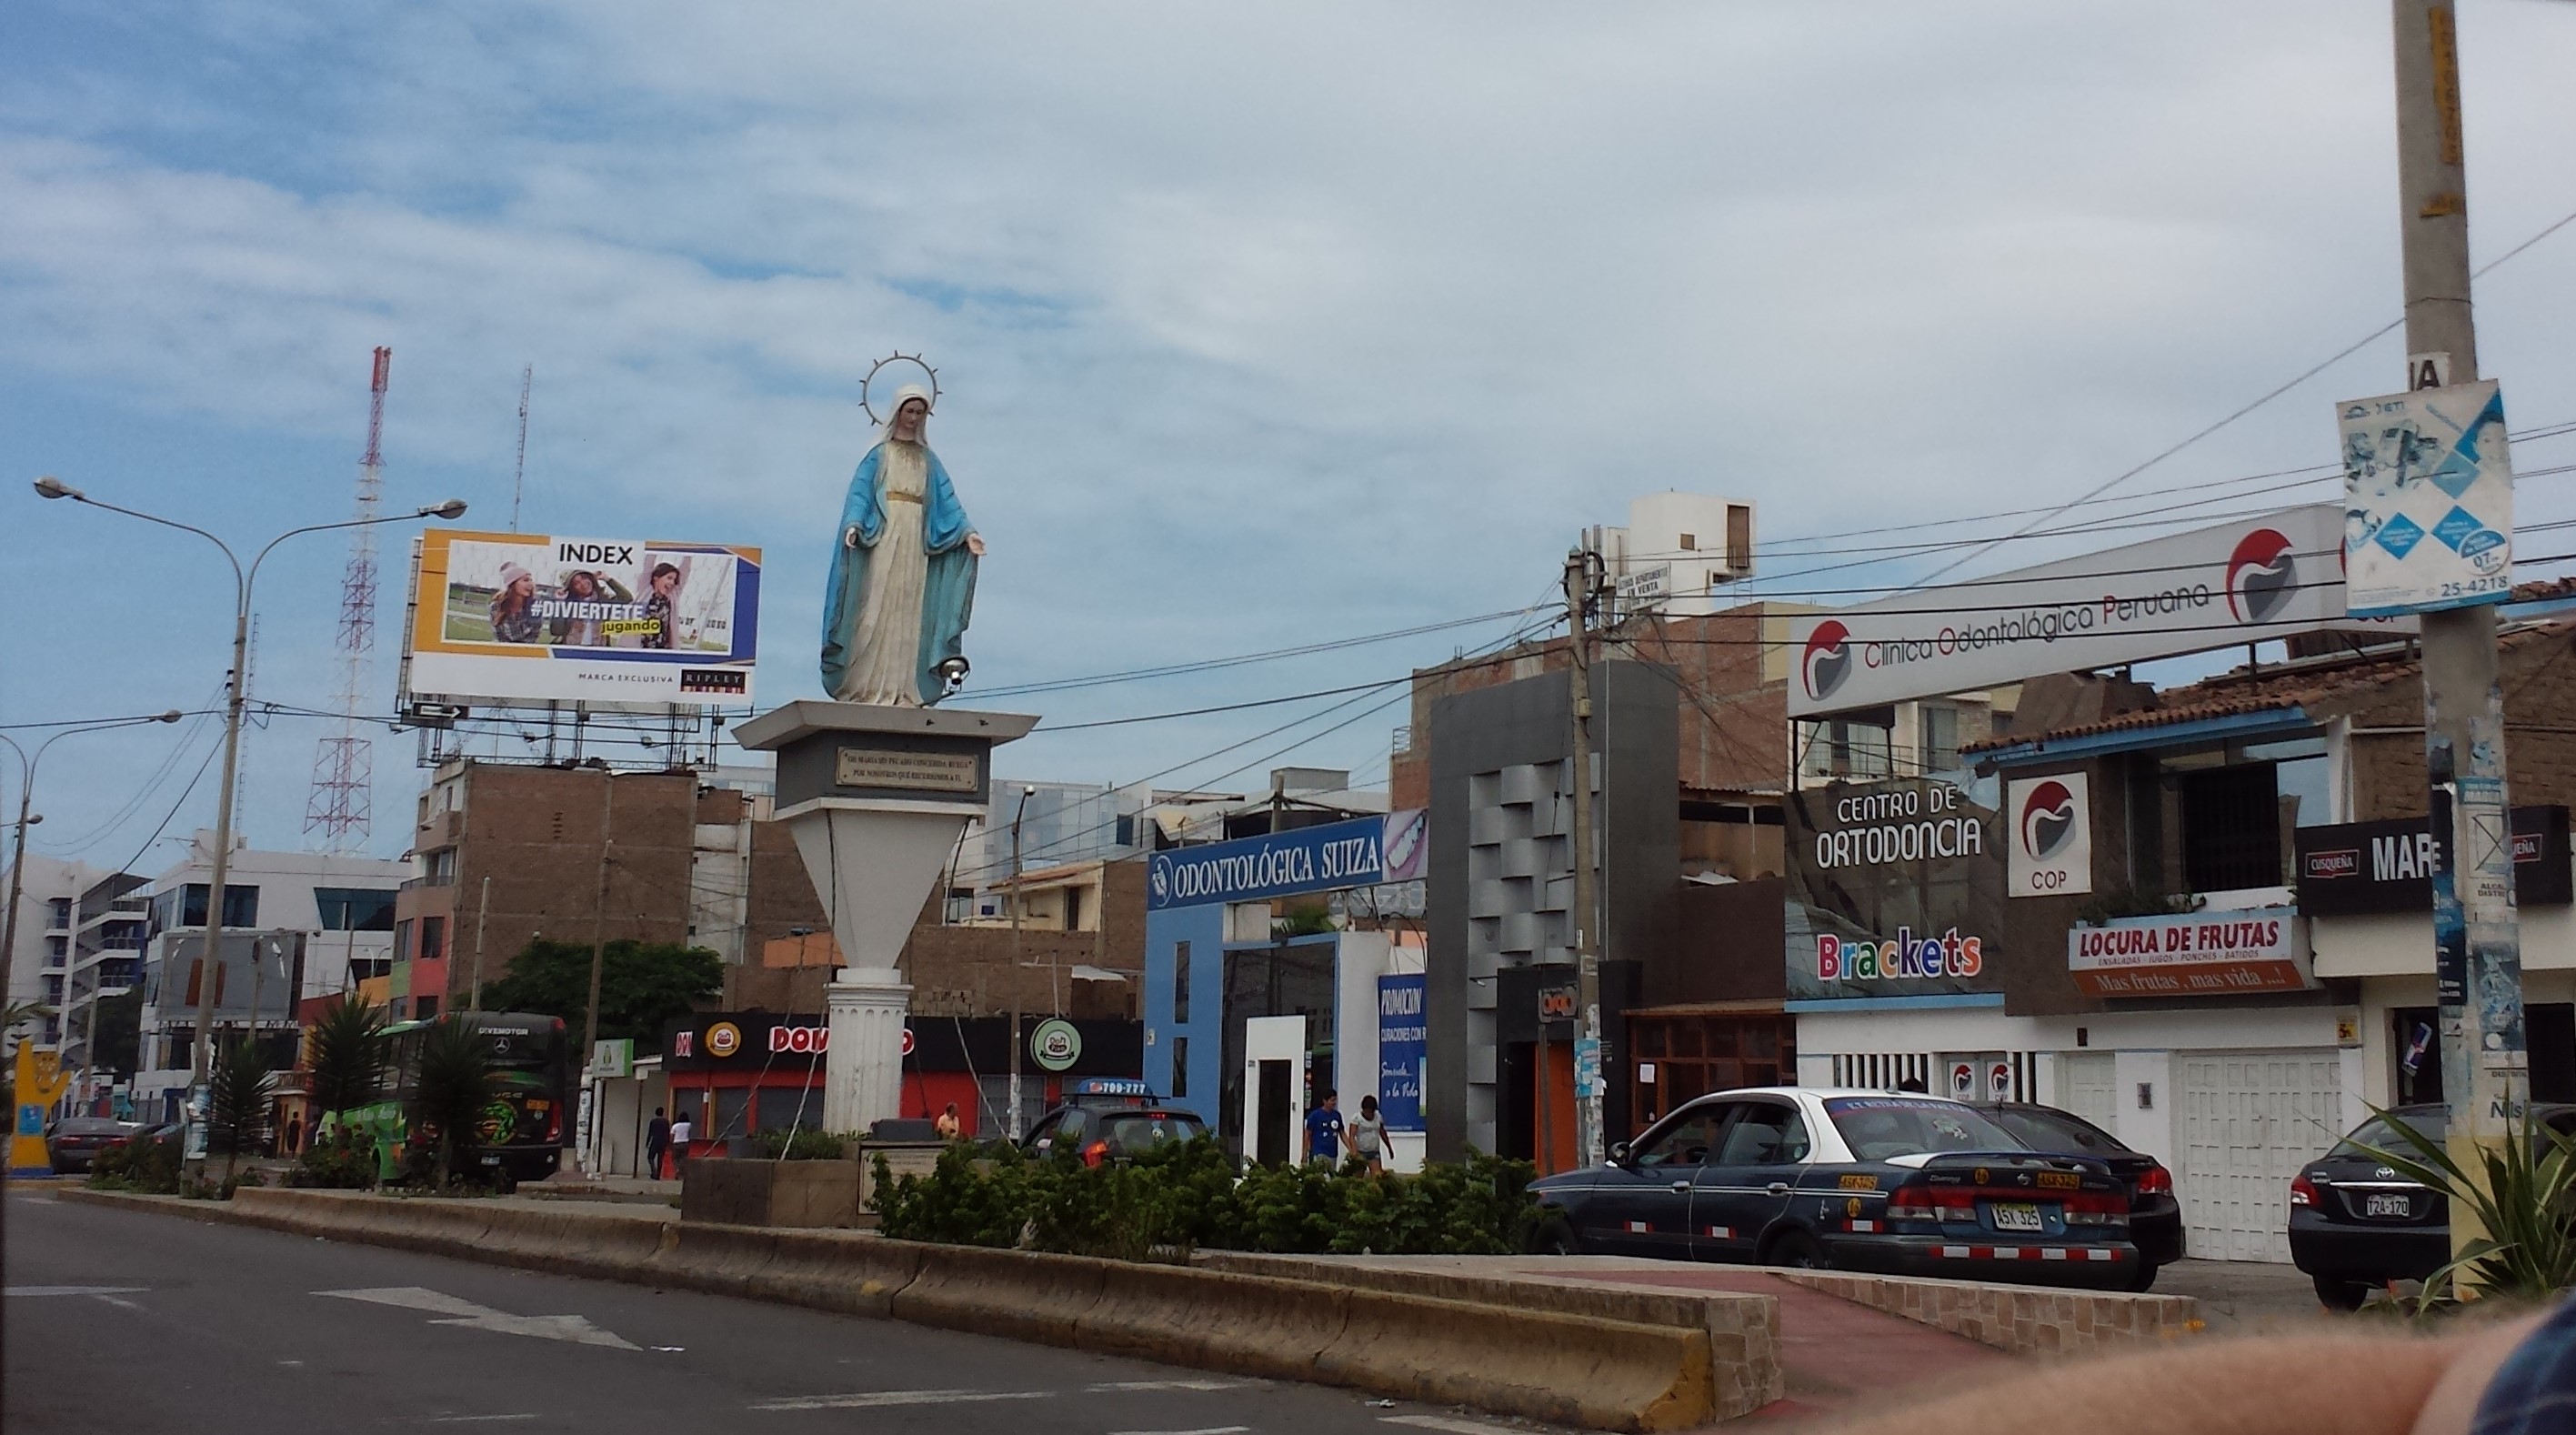 MIssion trip starts in Trujillo, Peru